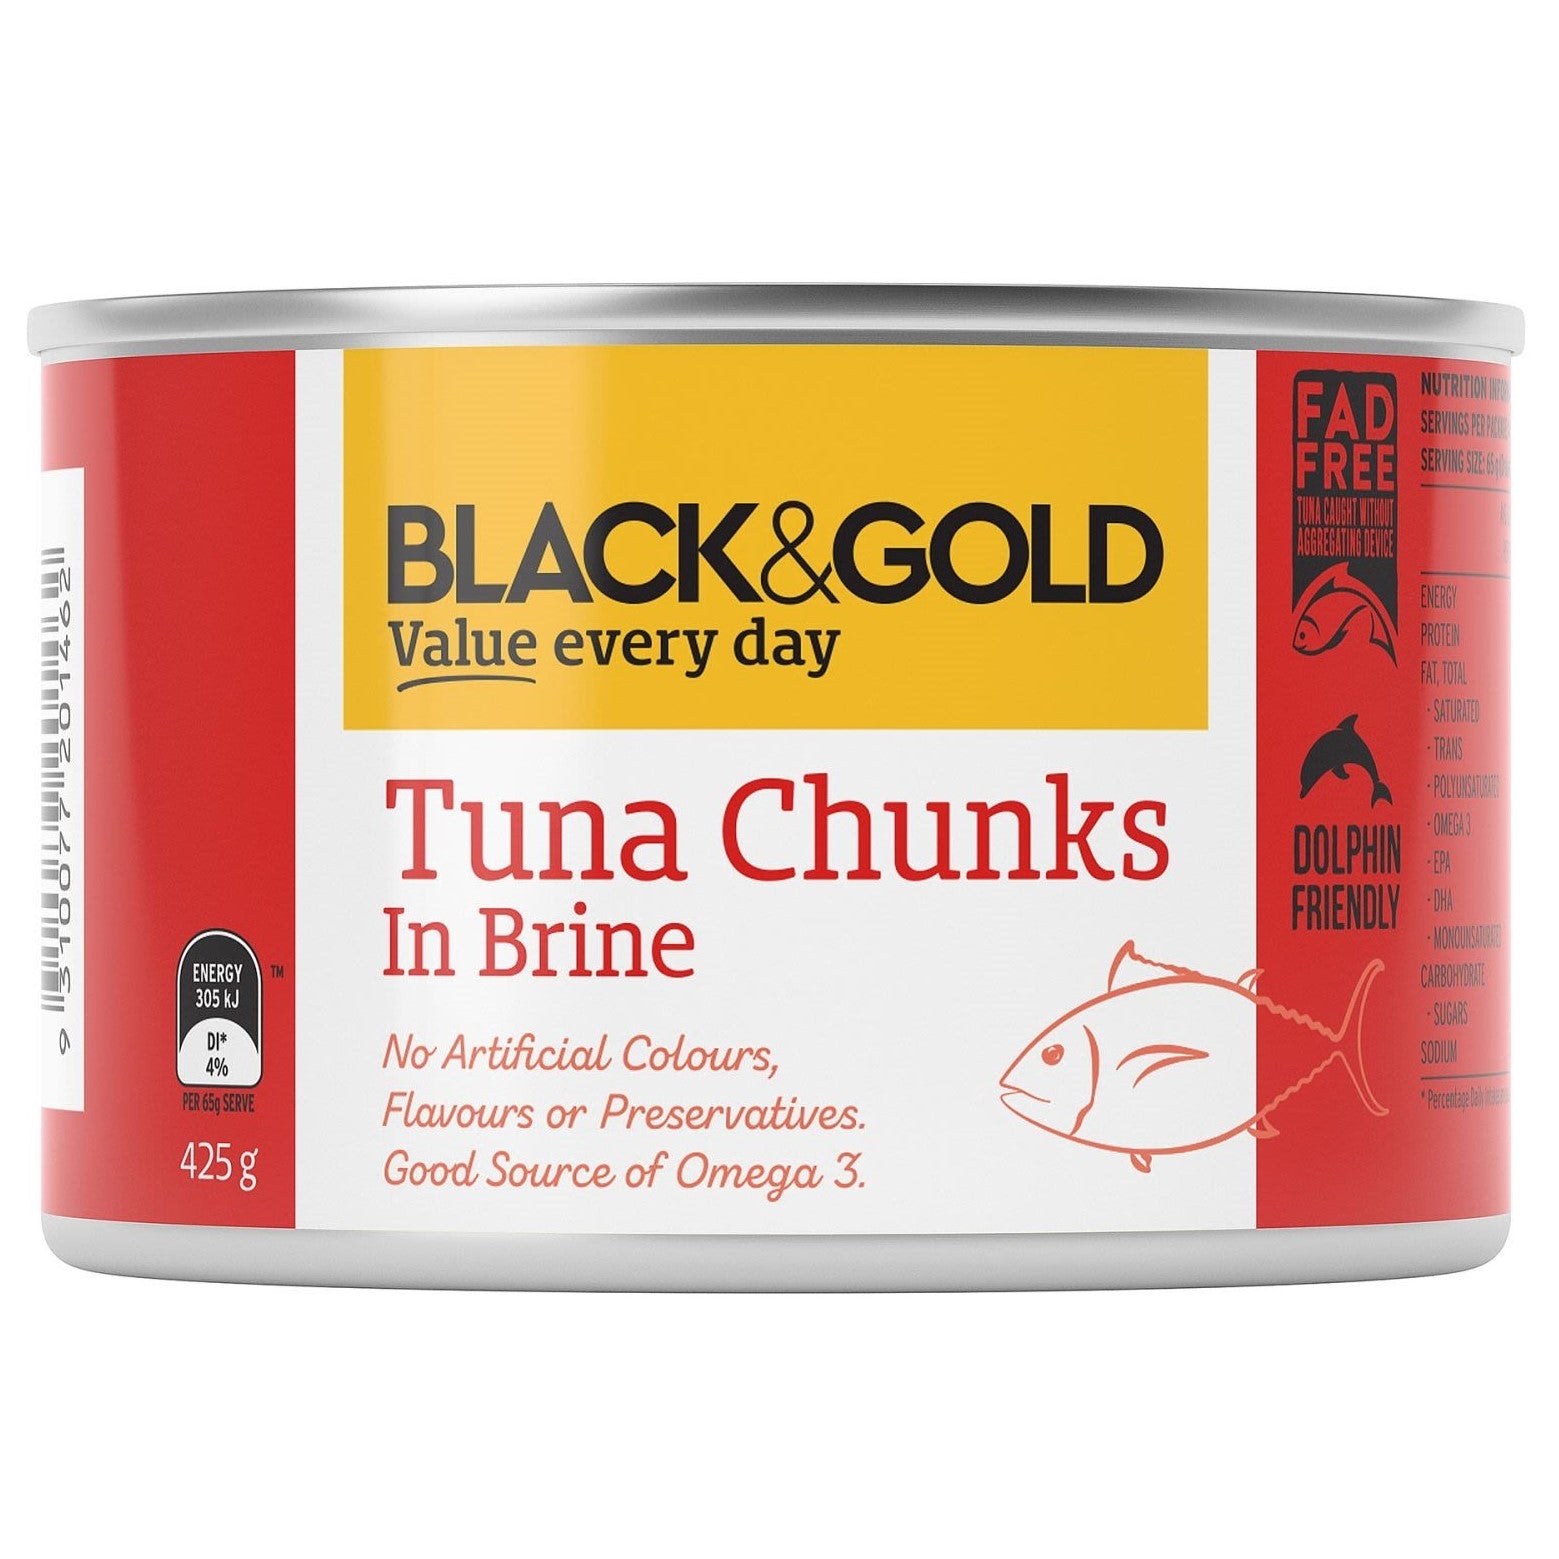 Black/Gold Tuna Chunks in Brine 425g